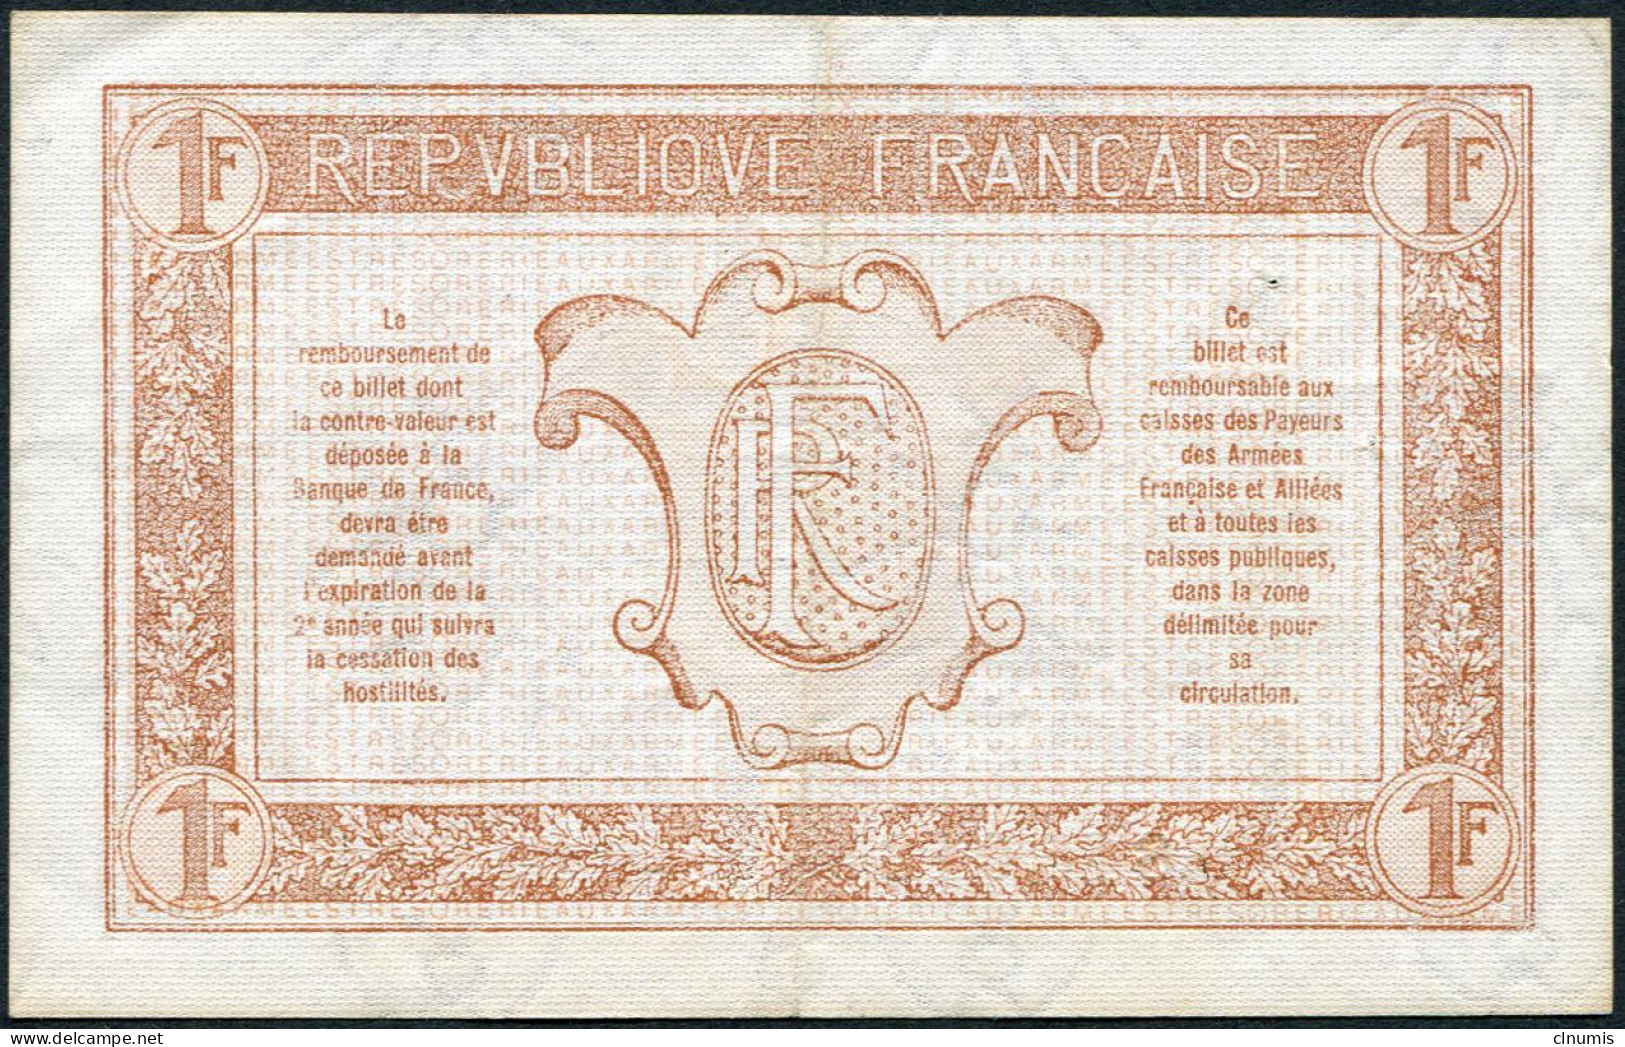 1 Franc Trésorerie Aux Armées 1917, Lettre C, N° 818013 - 1917-1919 Trésorerie Aux Armées